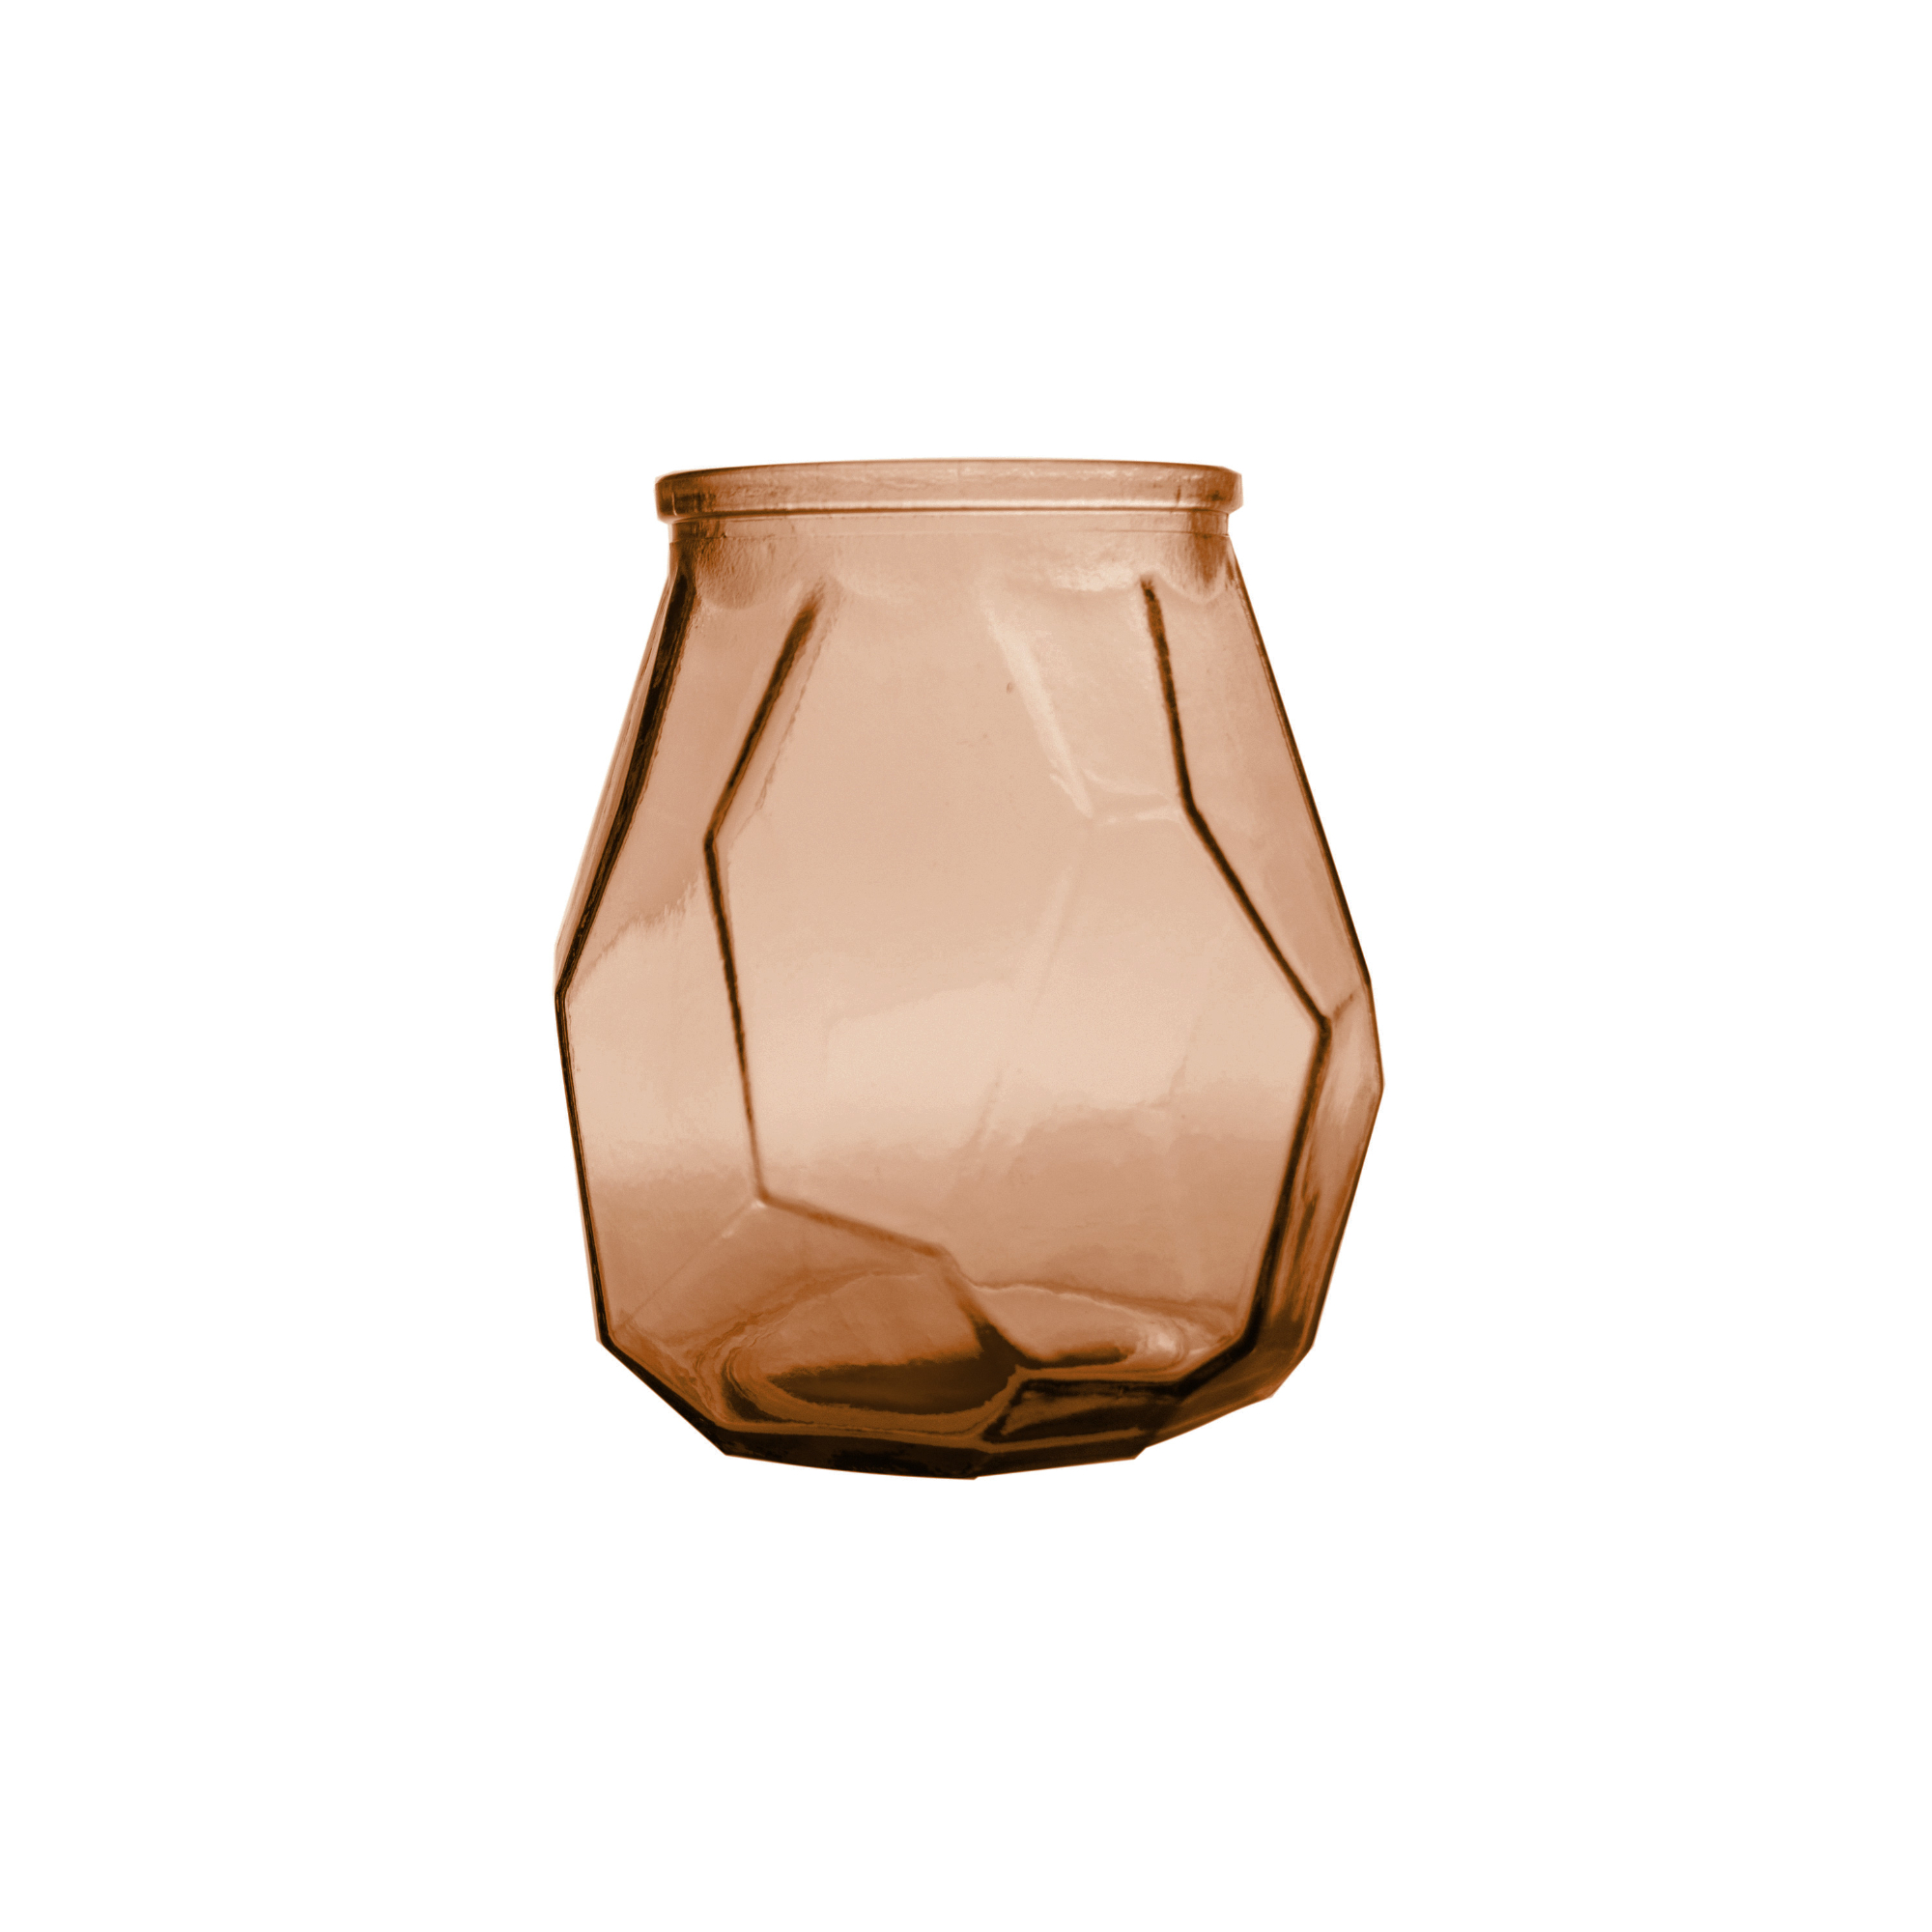 Ваза San miguel Origami коричневый 19 см ваза san miguel merida темно коричневый 25 см